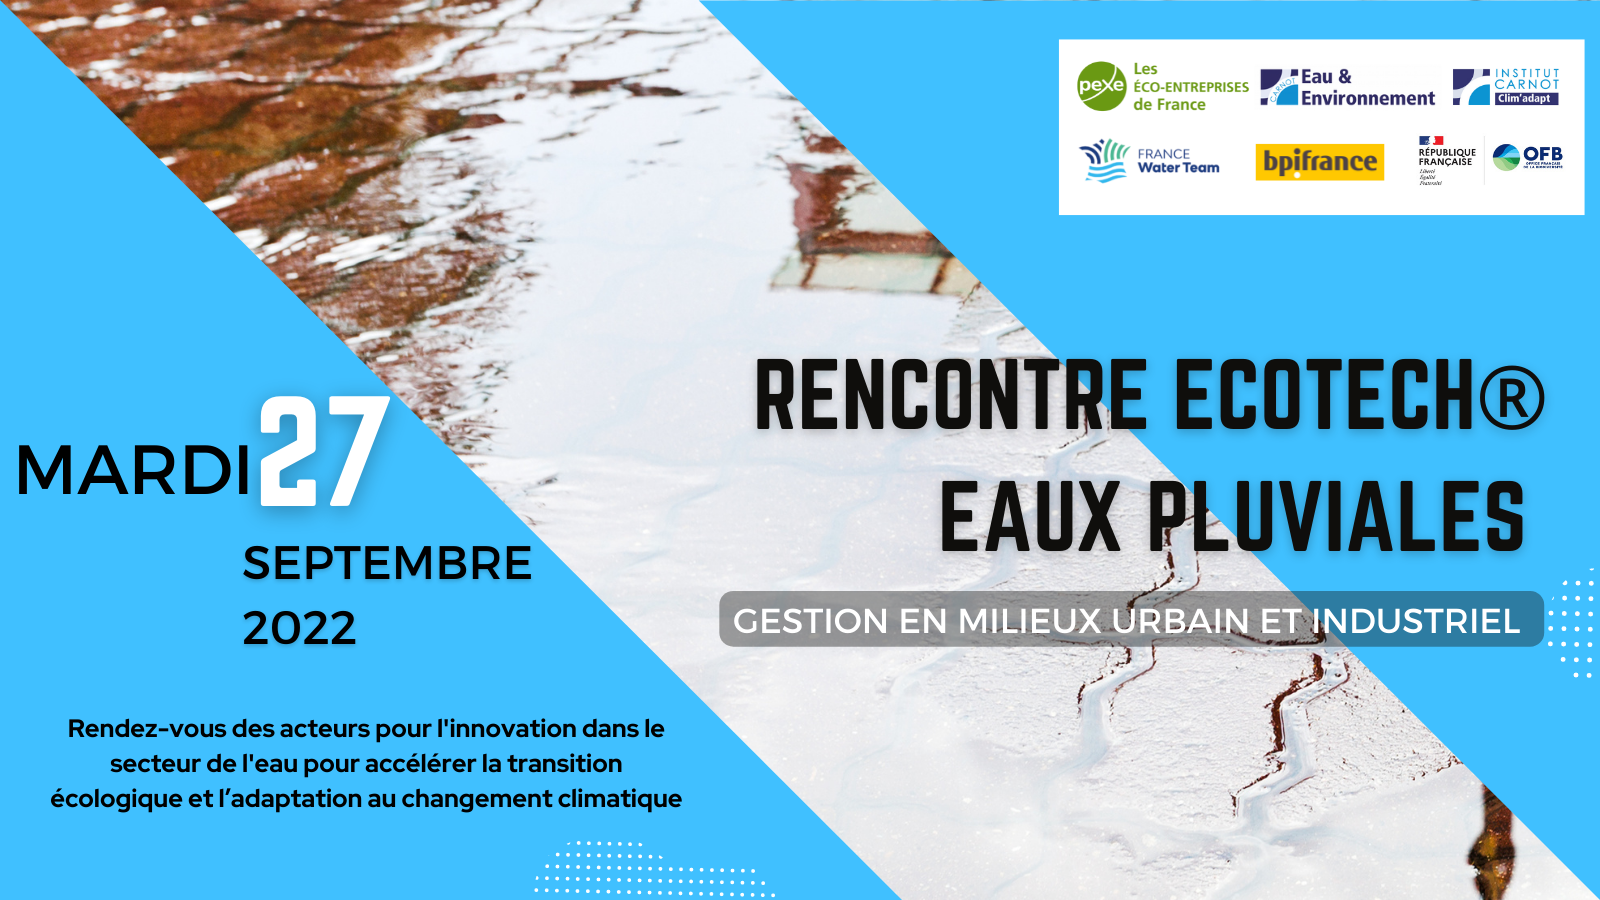 27 septembre - Rencontre Ecotech gestion des eaux pluviales